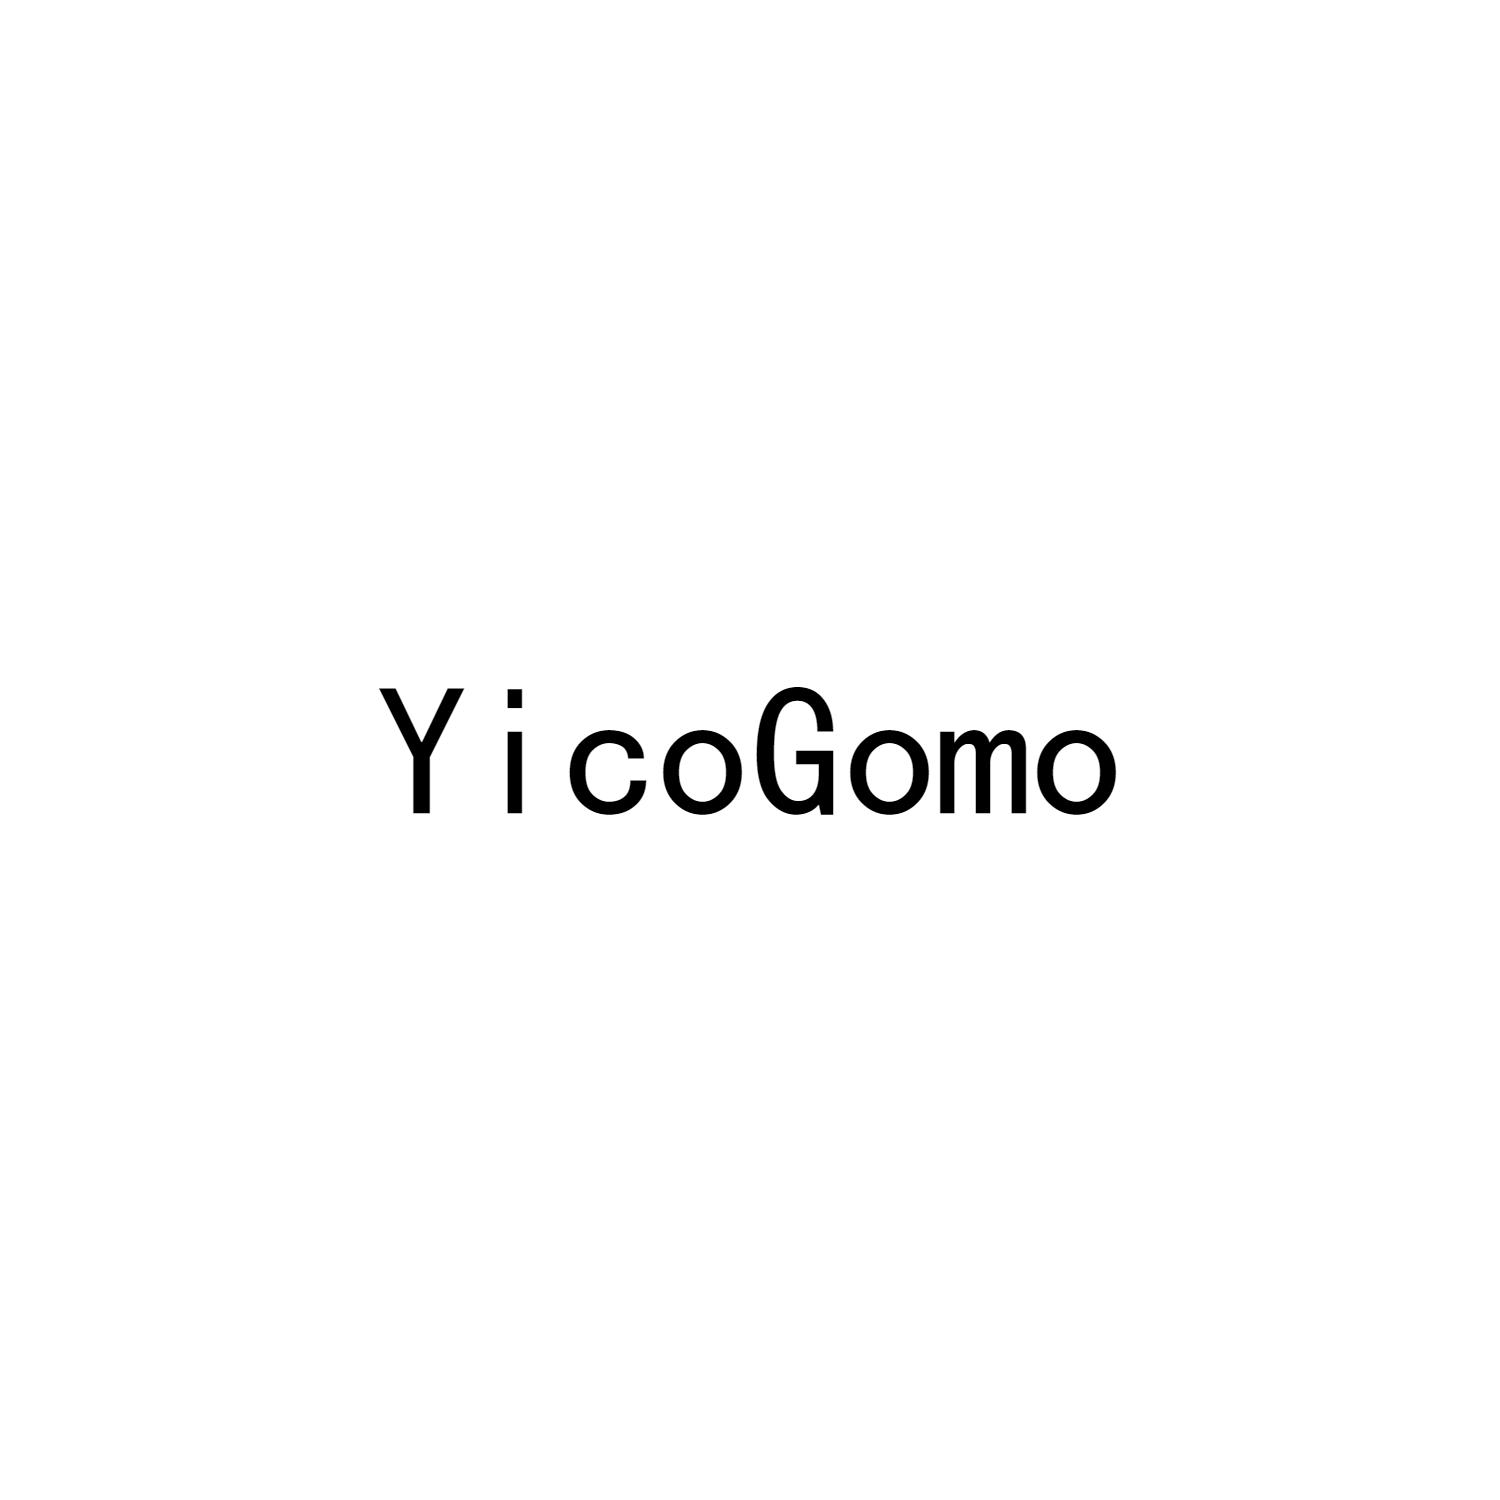 YIGOGOMO